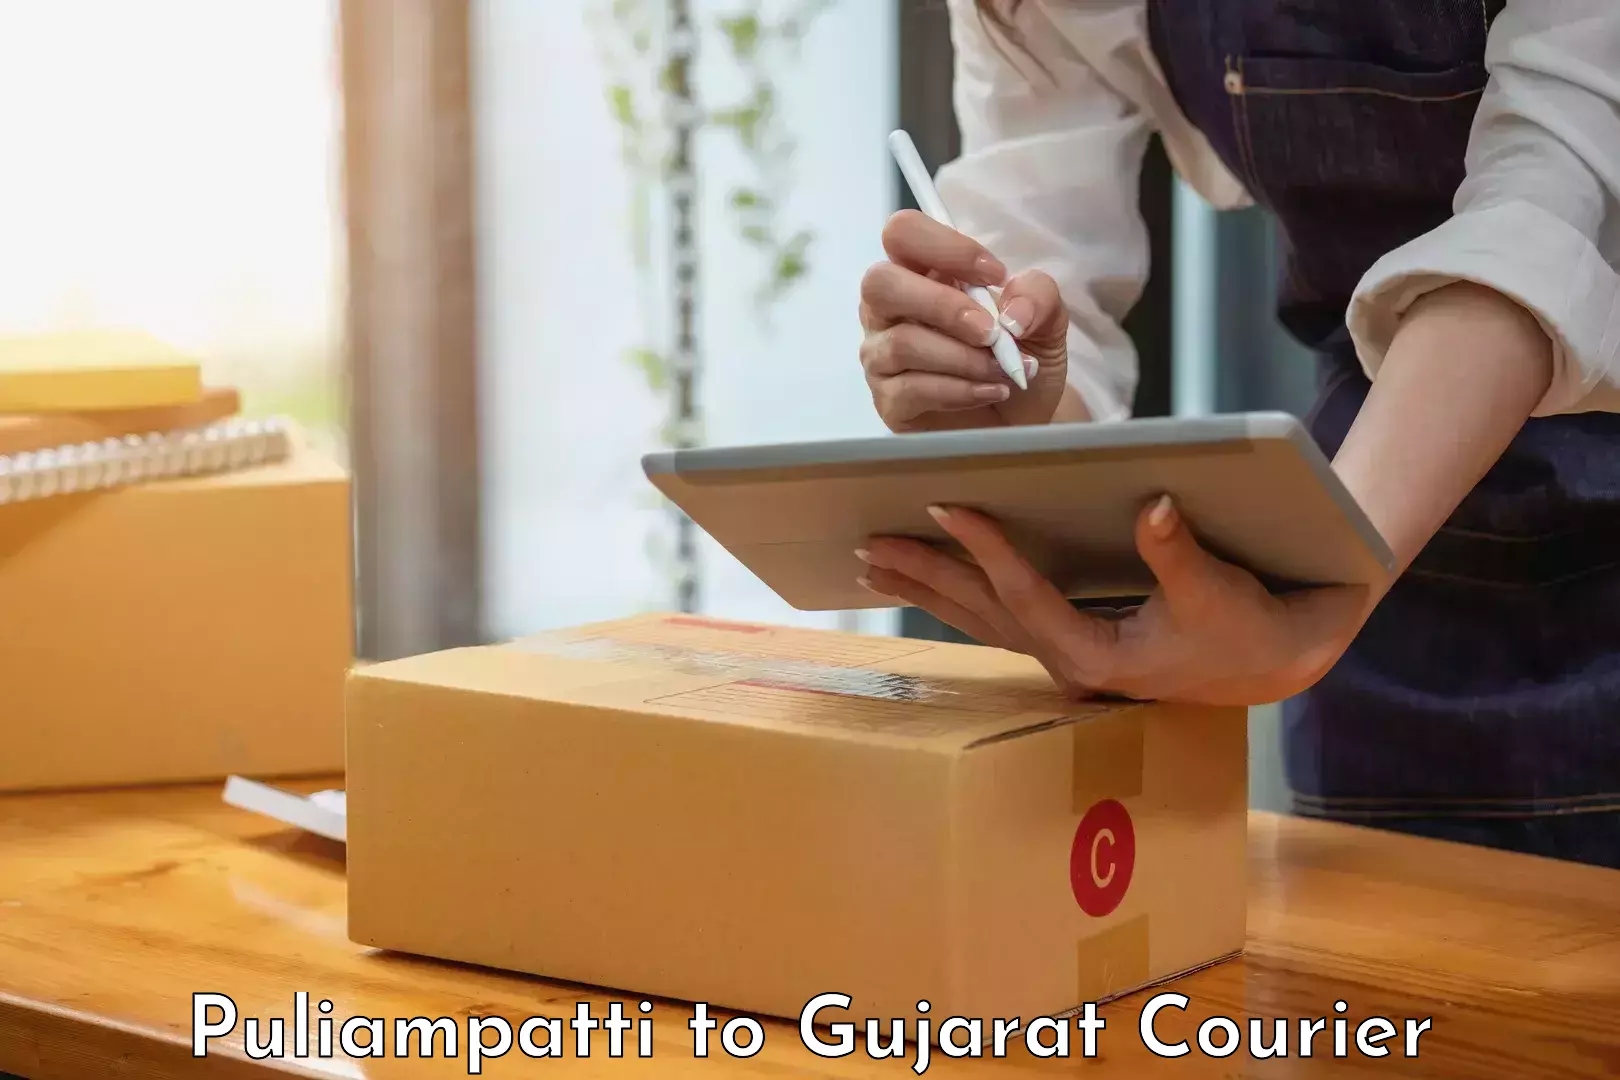 Digital shipping tools Puliampatti to Gujarat